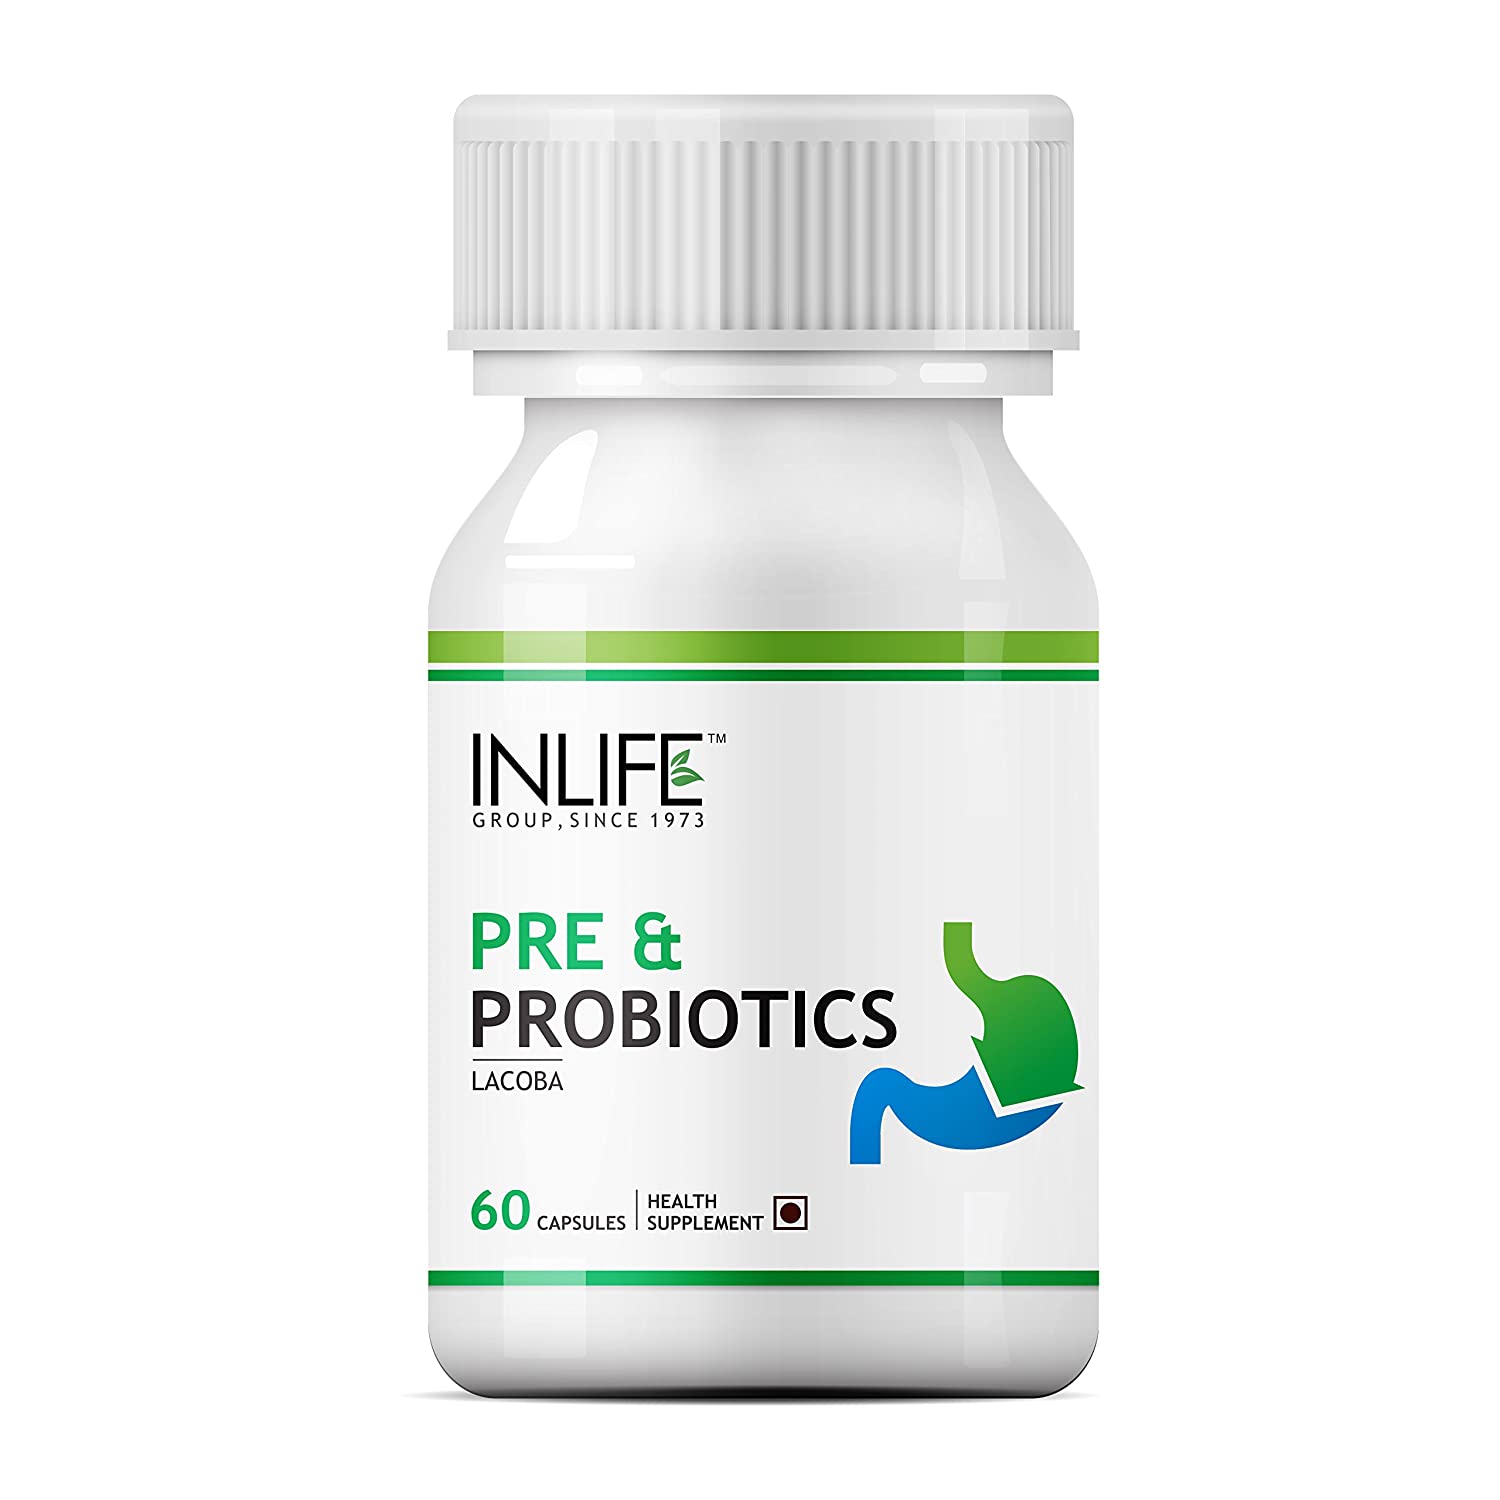 Inlife Pre & Probiotics Image